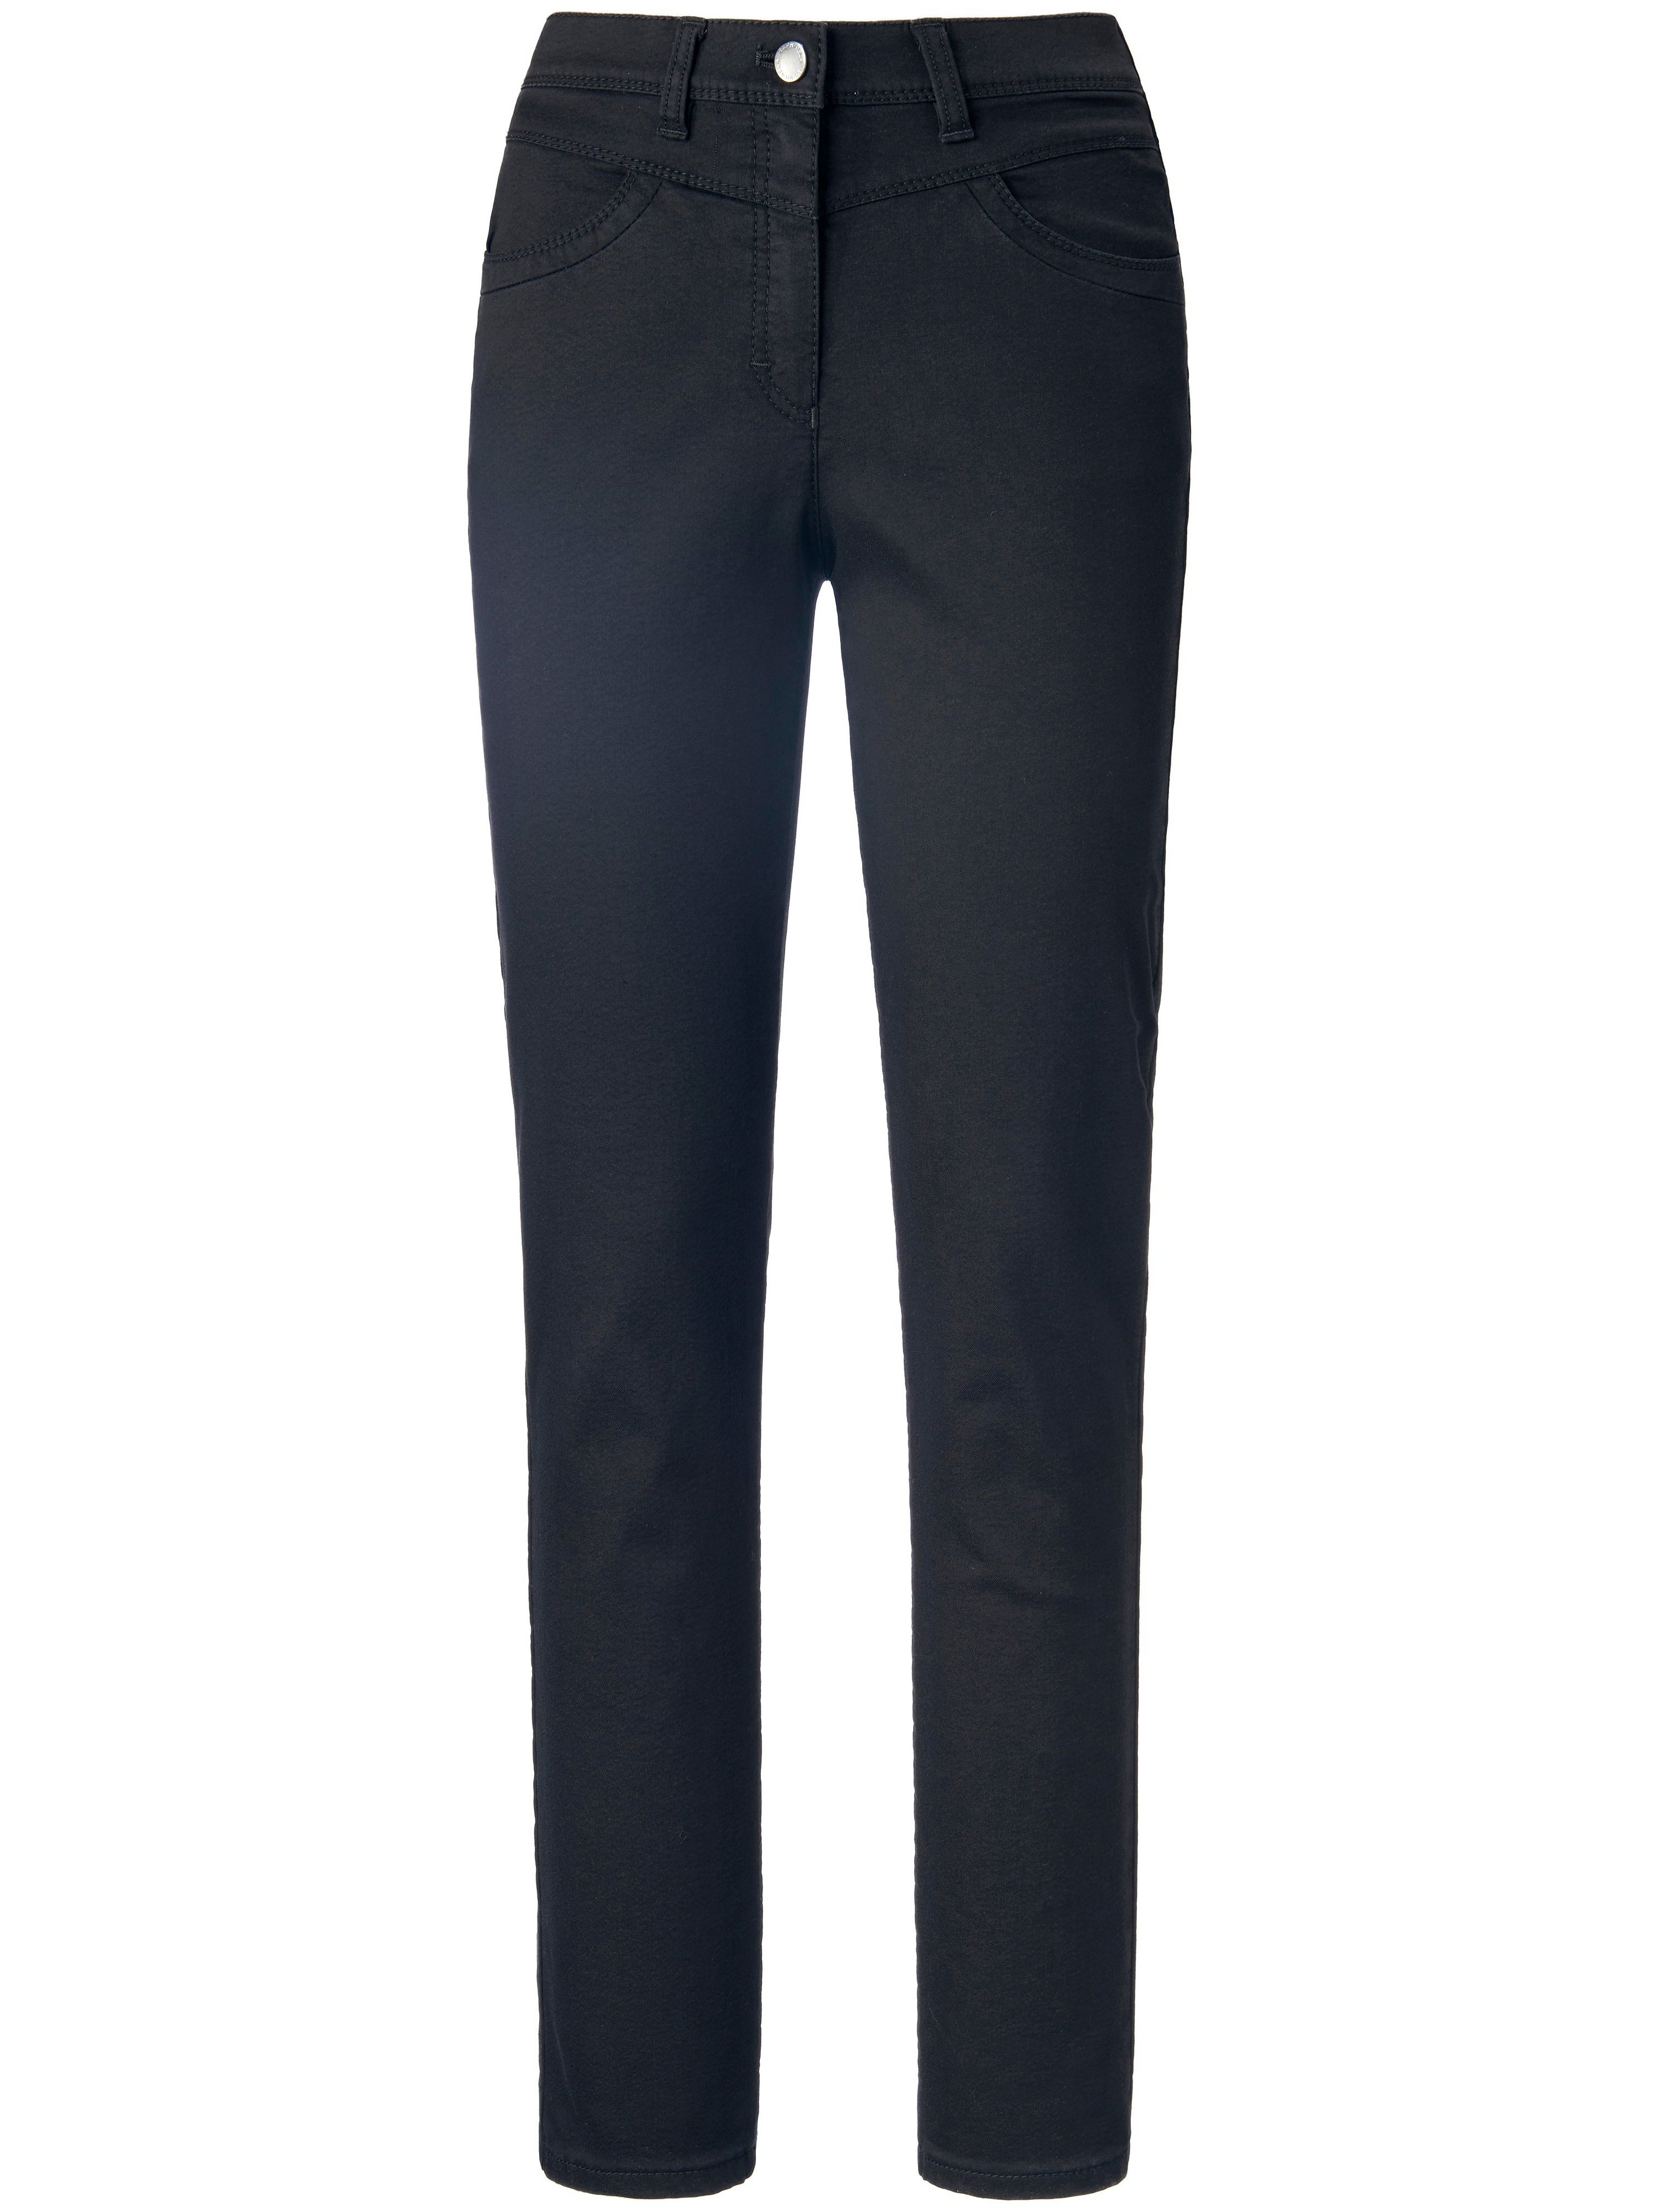 Le jean super slim modèle Laura New  Raphaela by Brax noir